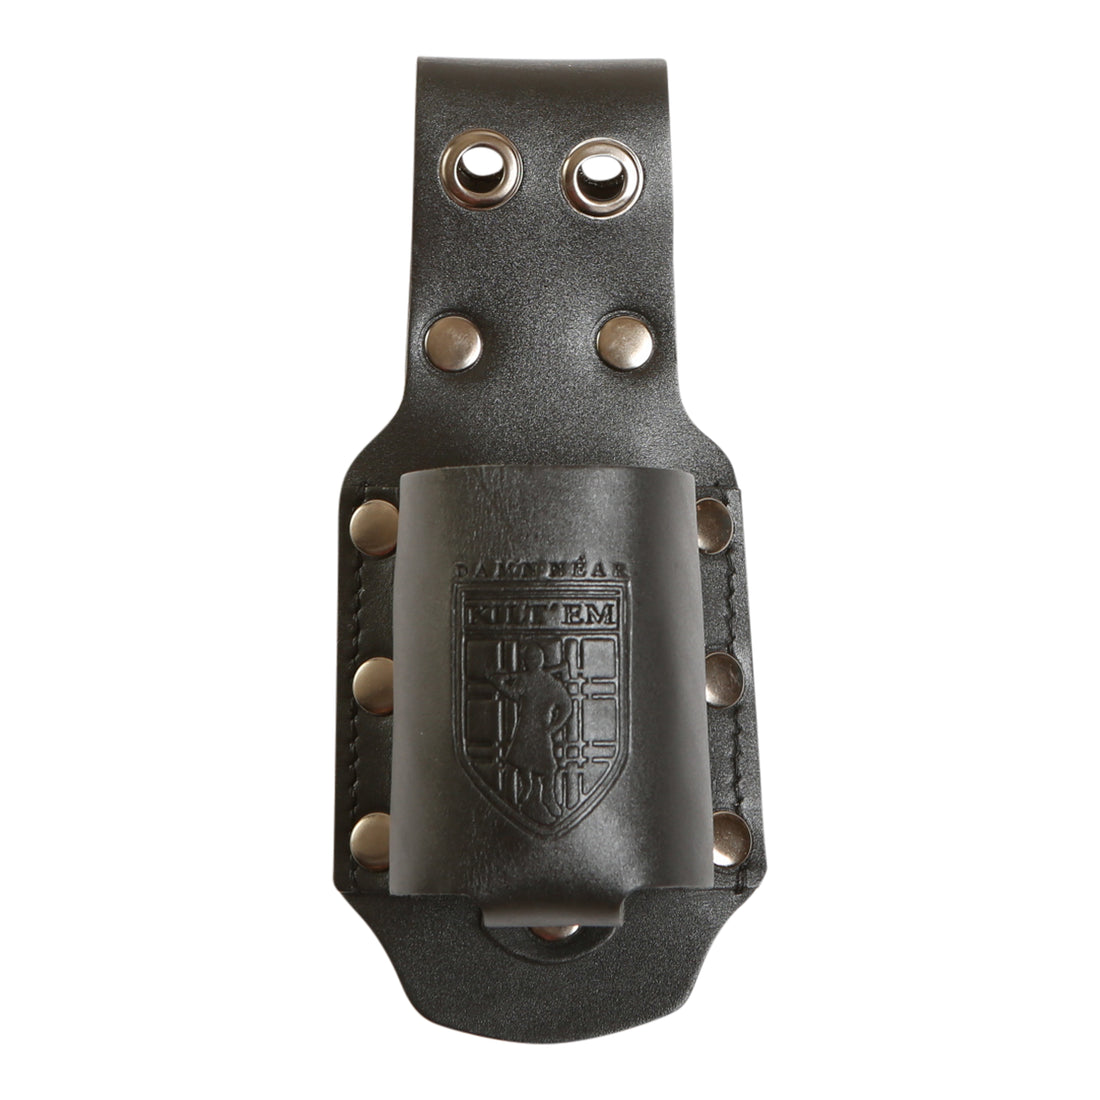 12 oz Standard Bottle Holder - Black Leather Preview #3